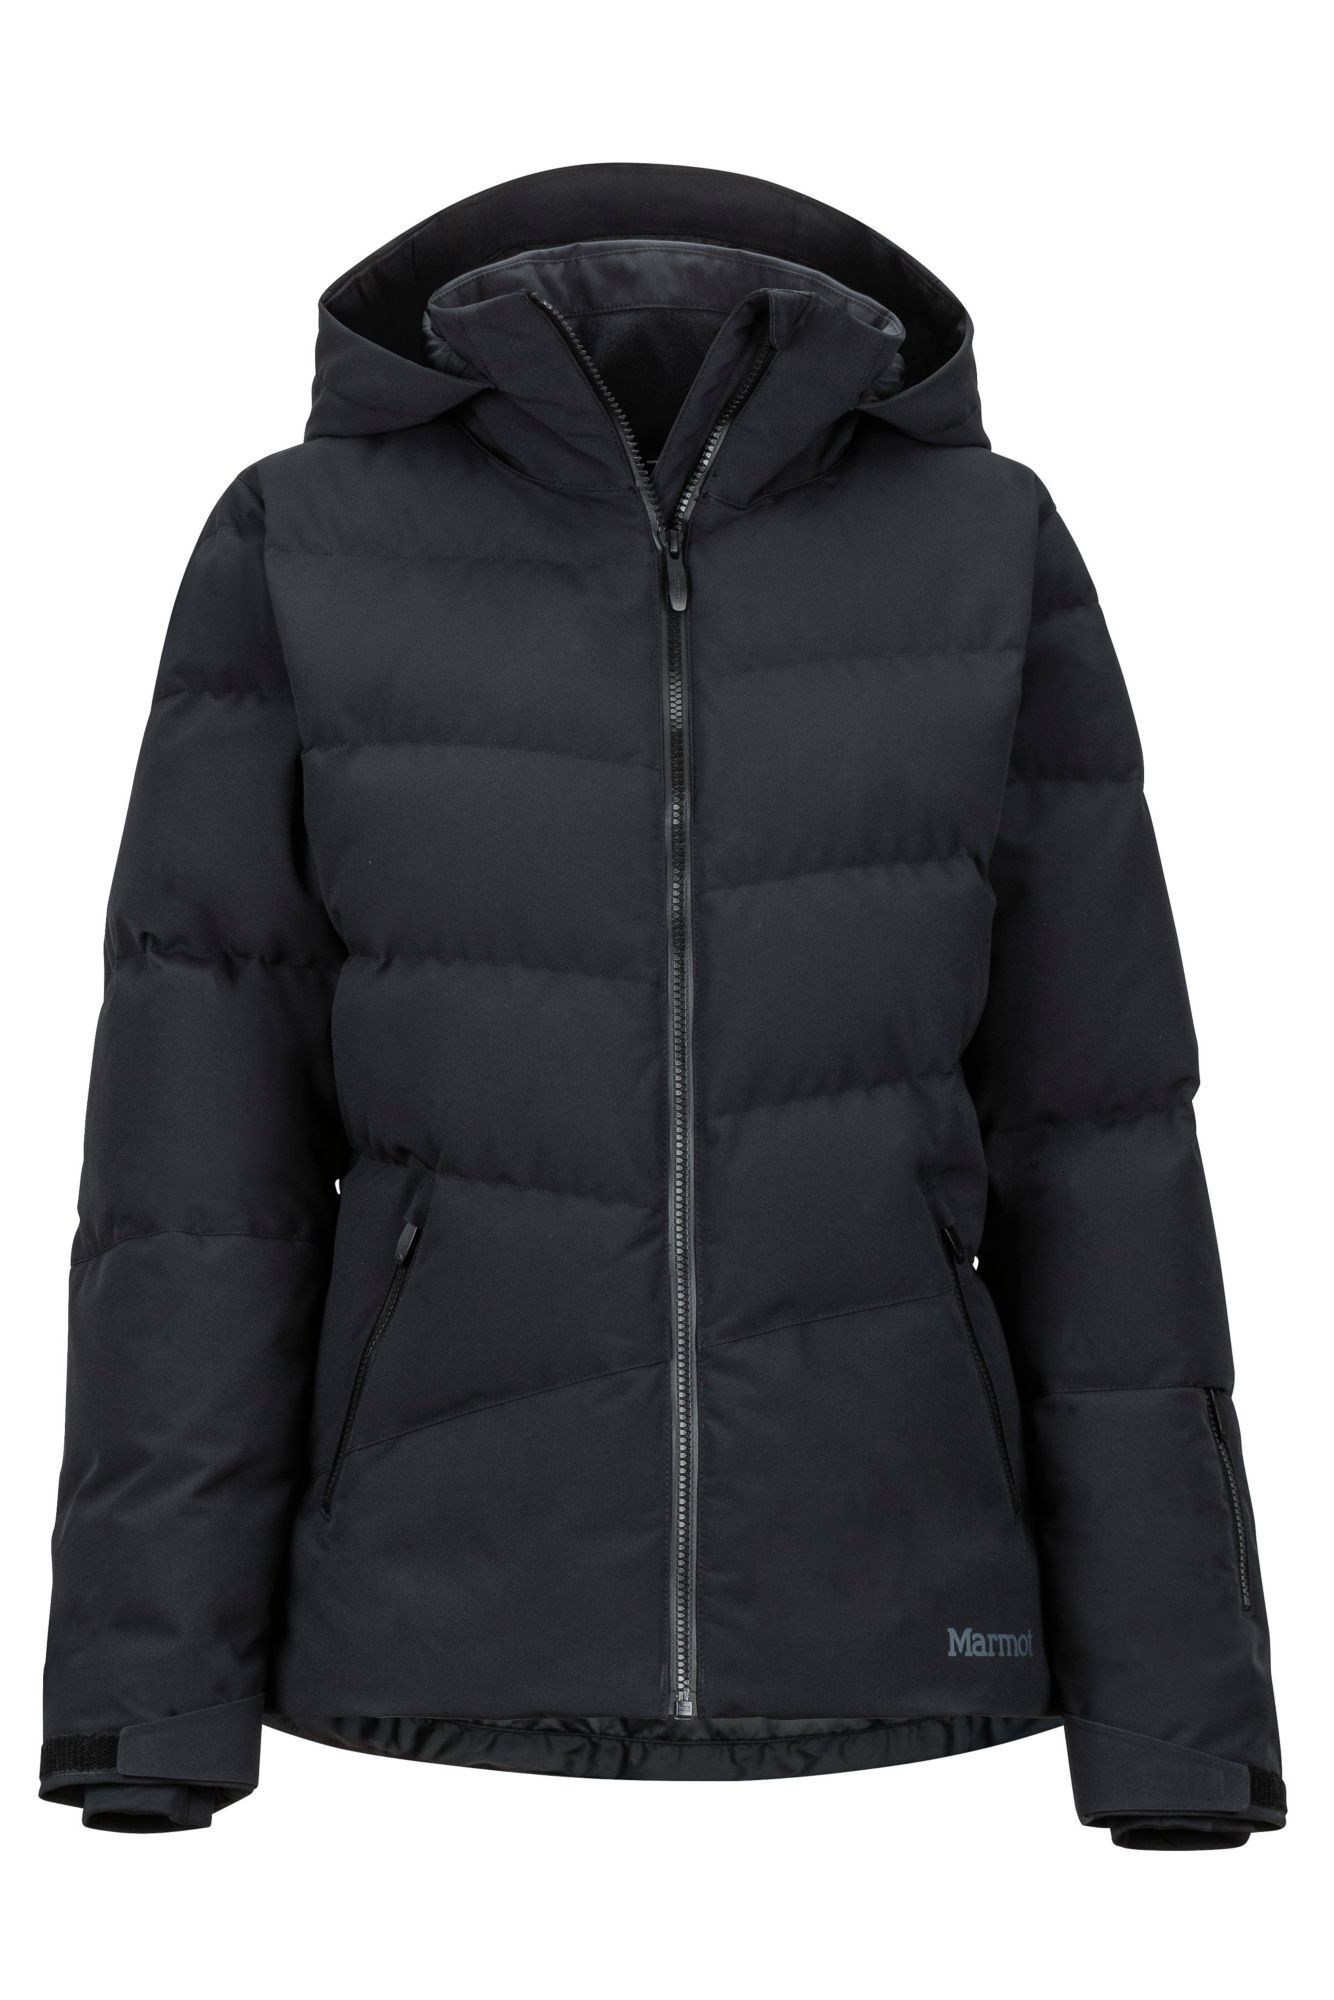 Marmot Slingshot Jacket - Ski-jas - Dames